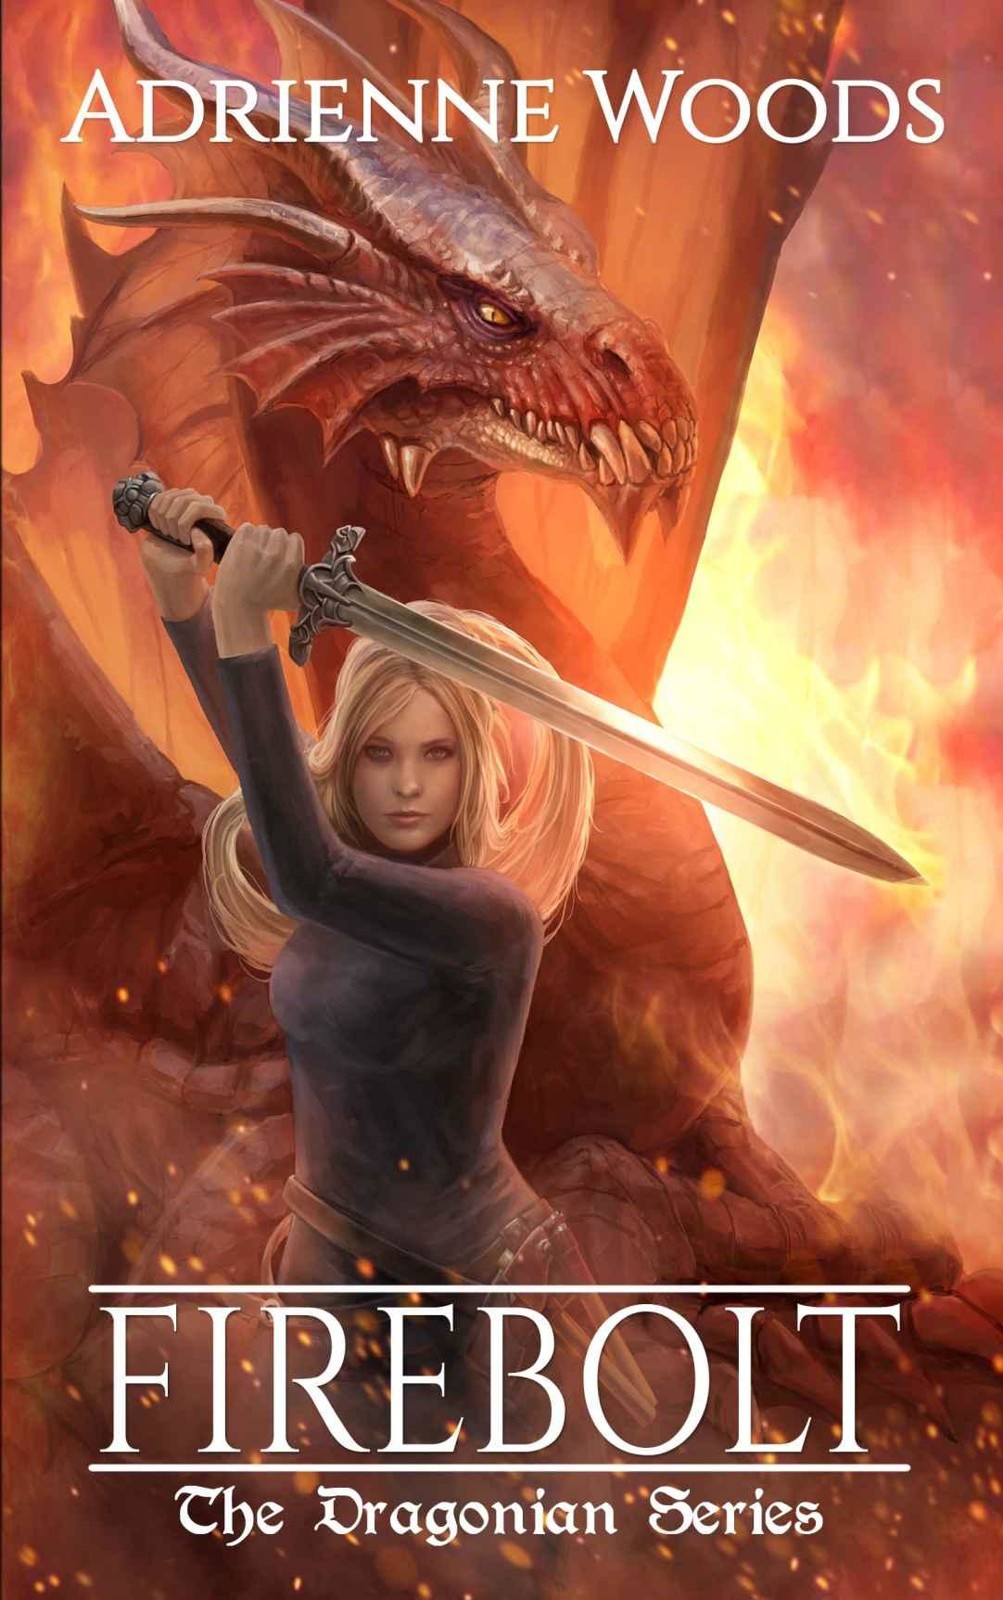 Firebolt: Pleasant dragons & magic fantasy read